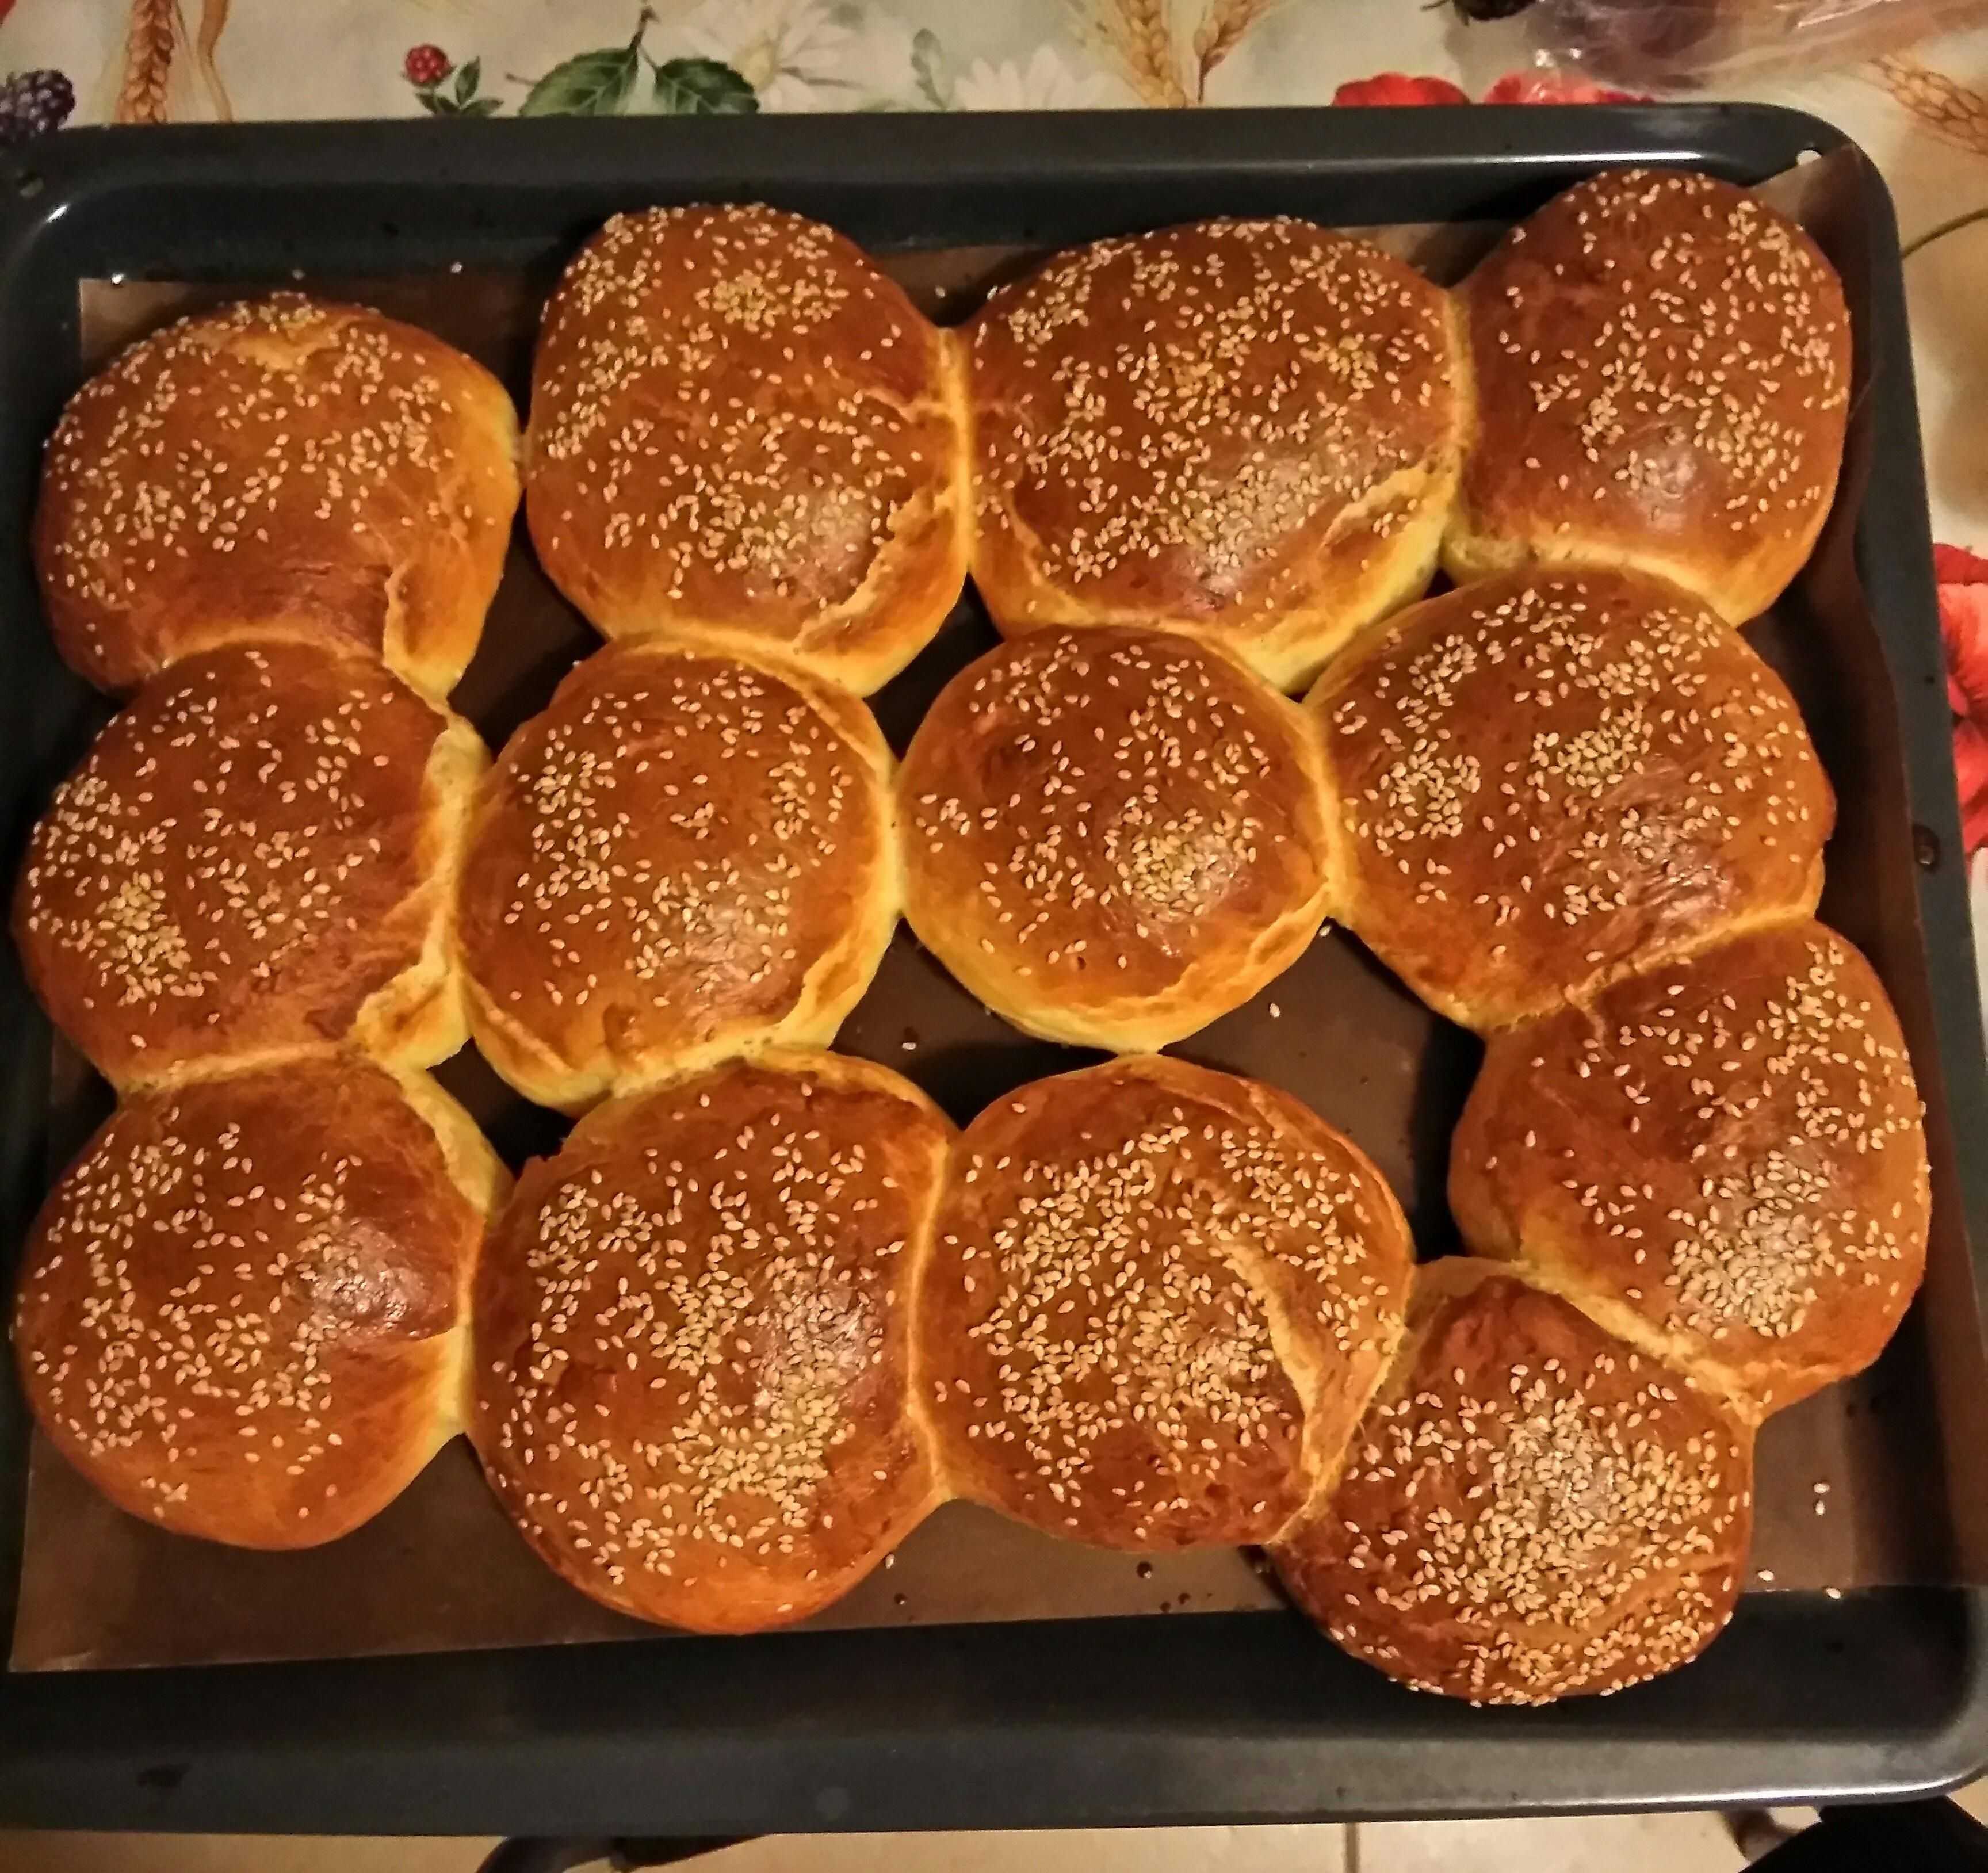 Булочки для гамбургеров: рецепты приготовления как в макдональдсе, в духовке, в хлебопечке